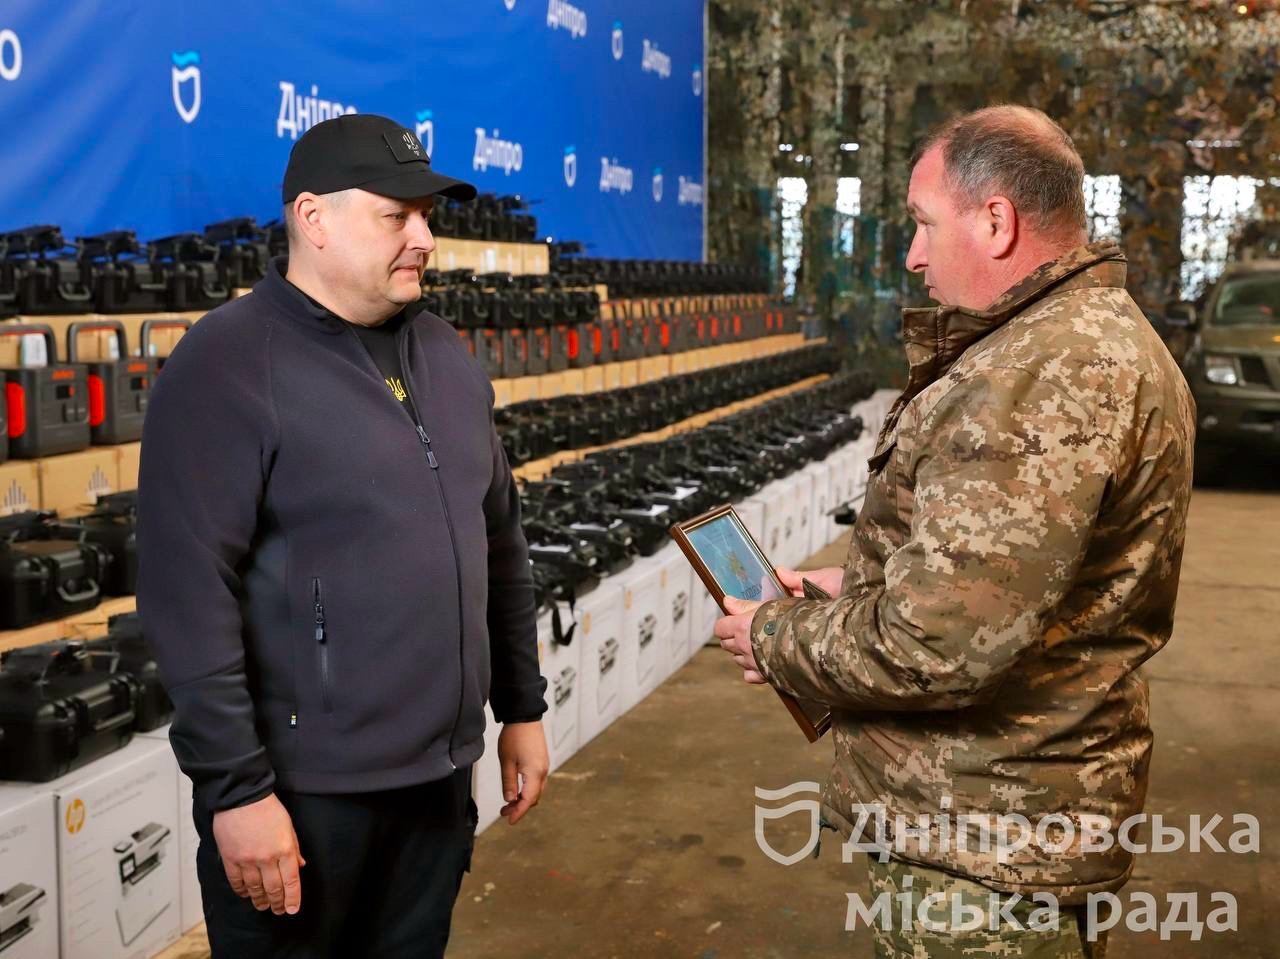 Тепловізори, теплий одяг, генератори та інша техніка: у Дніпрі розповіли про допомогу Силам оборони України